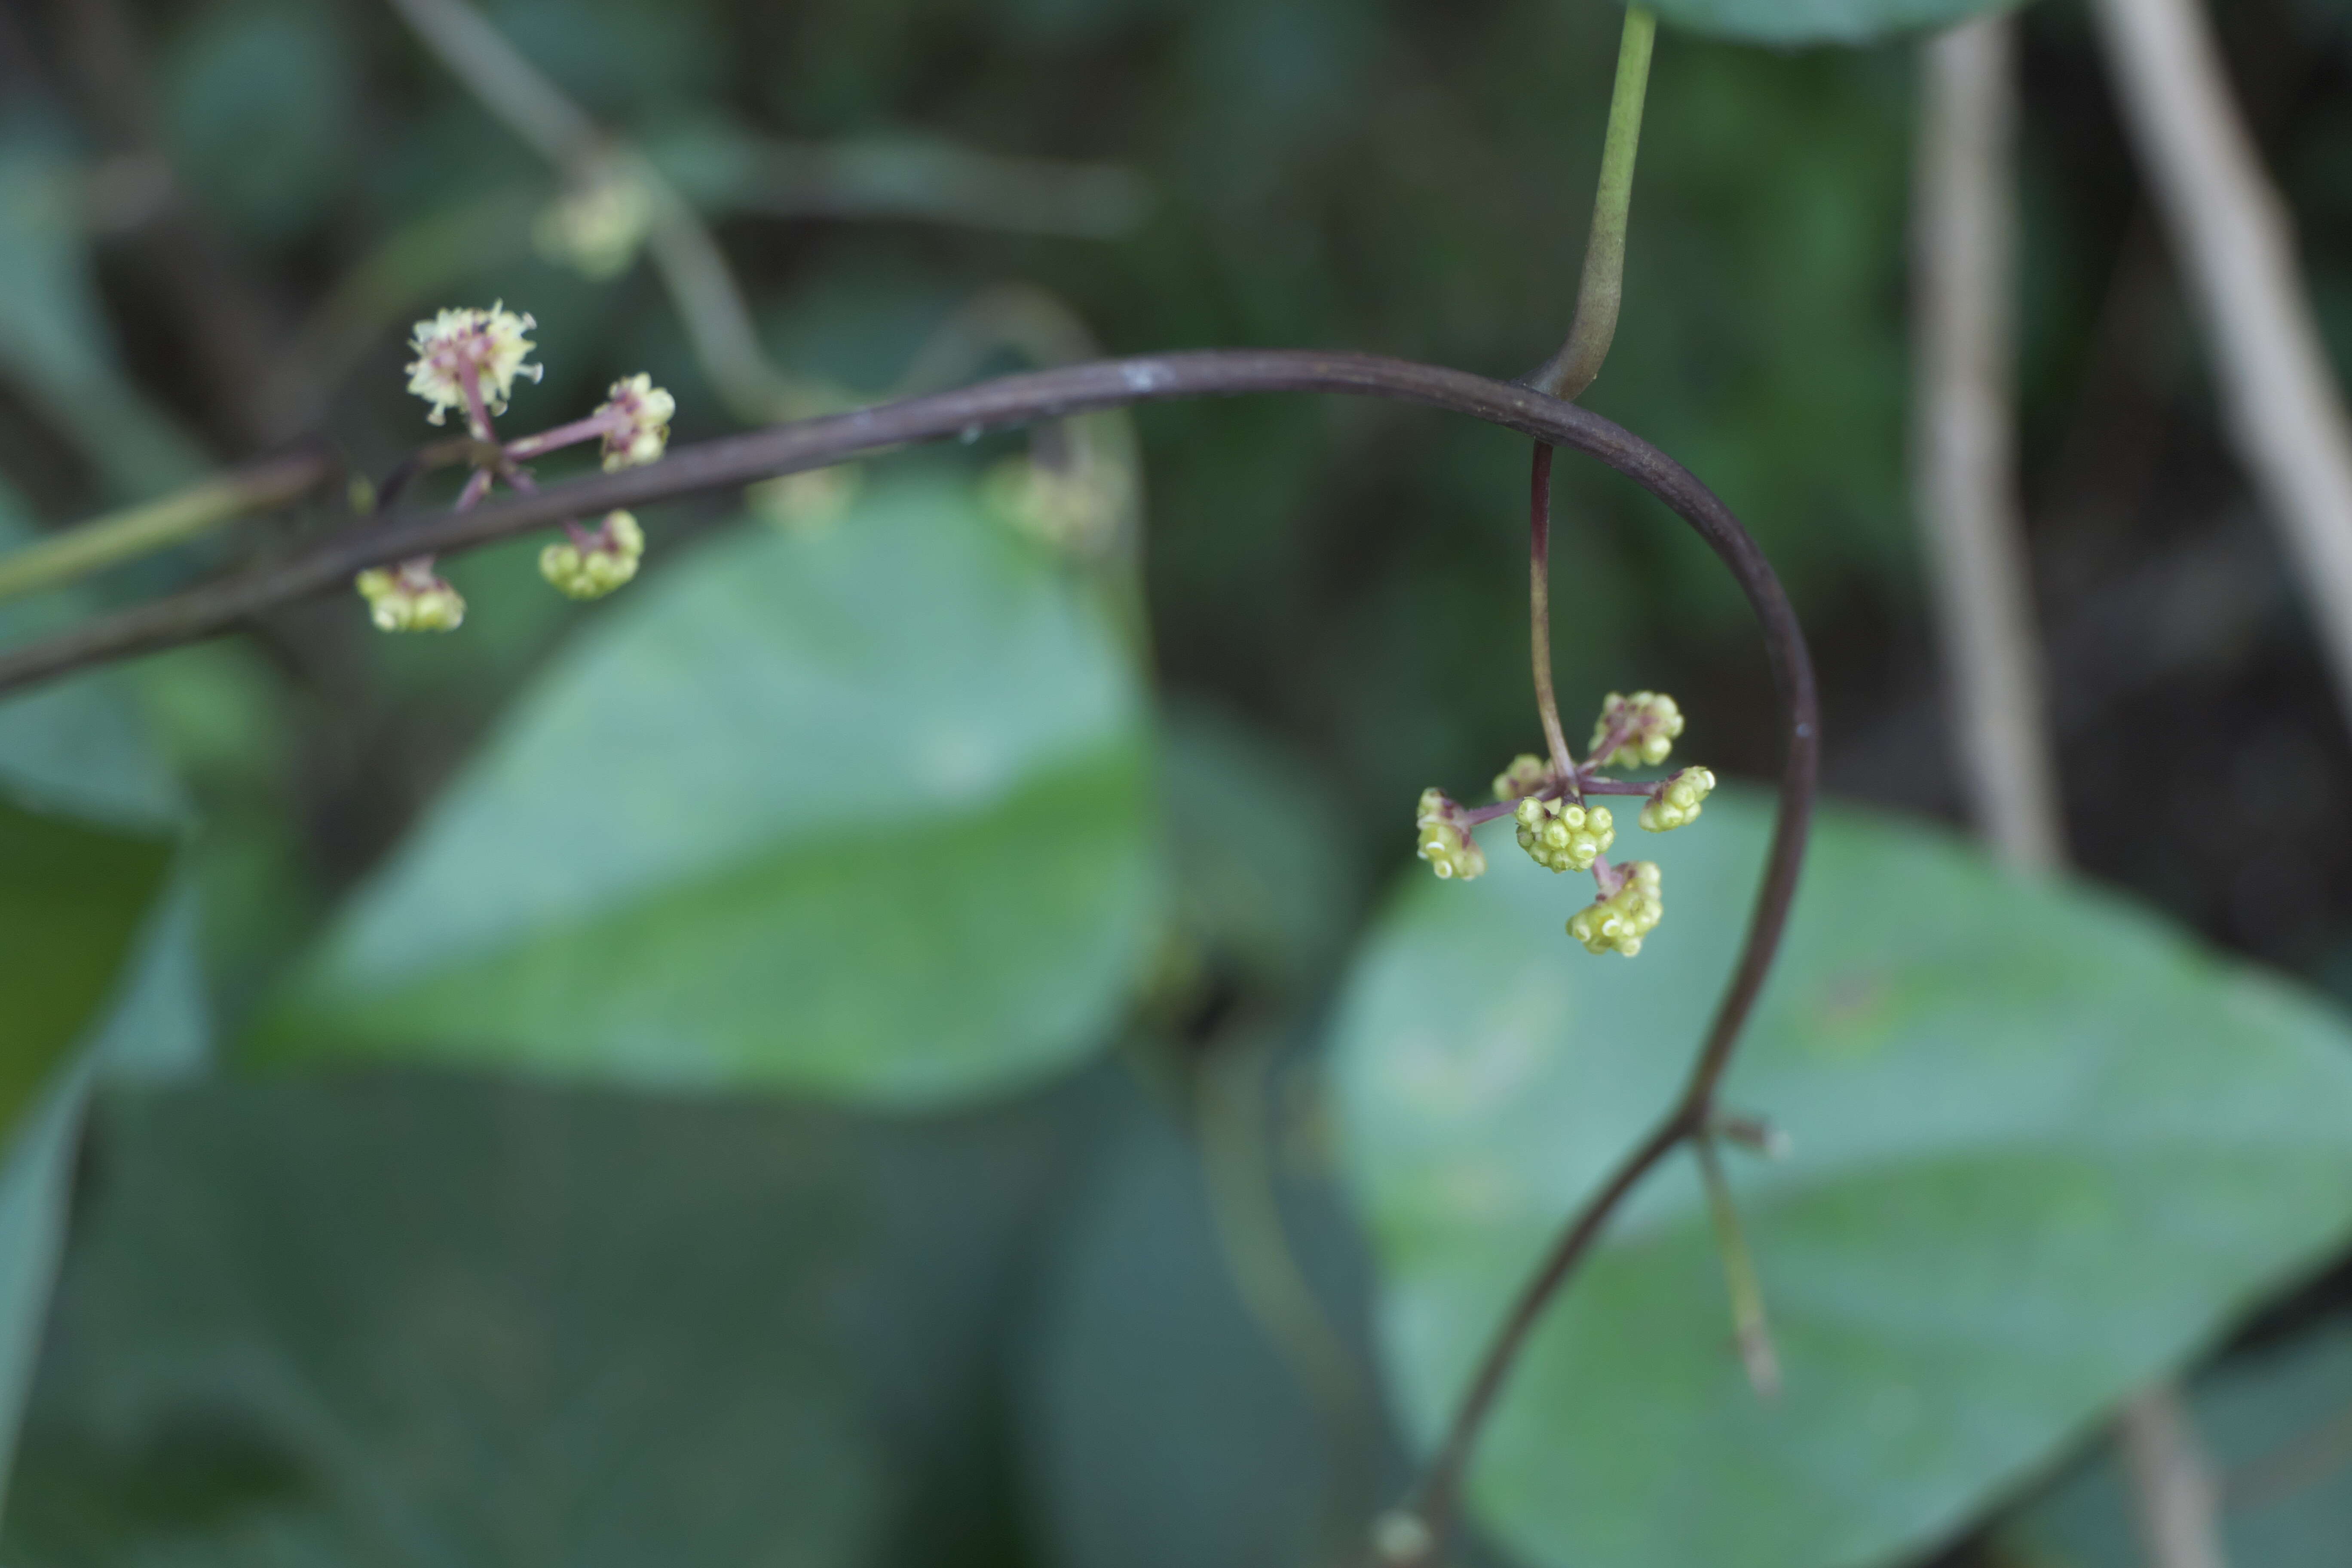 Image de Stephania japonica (Thunb.) Miers